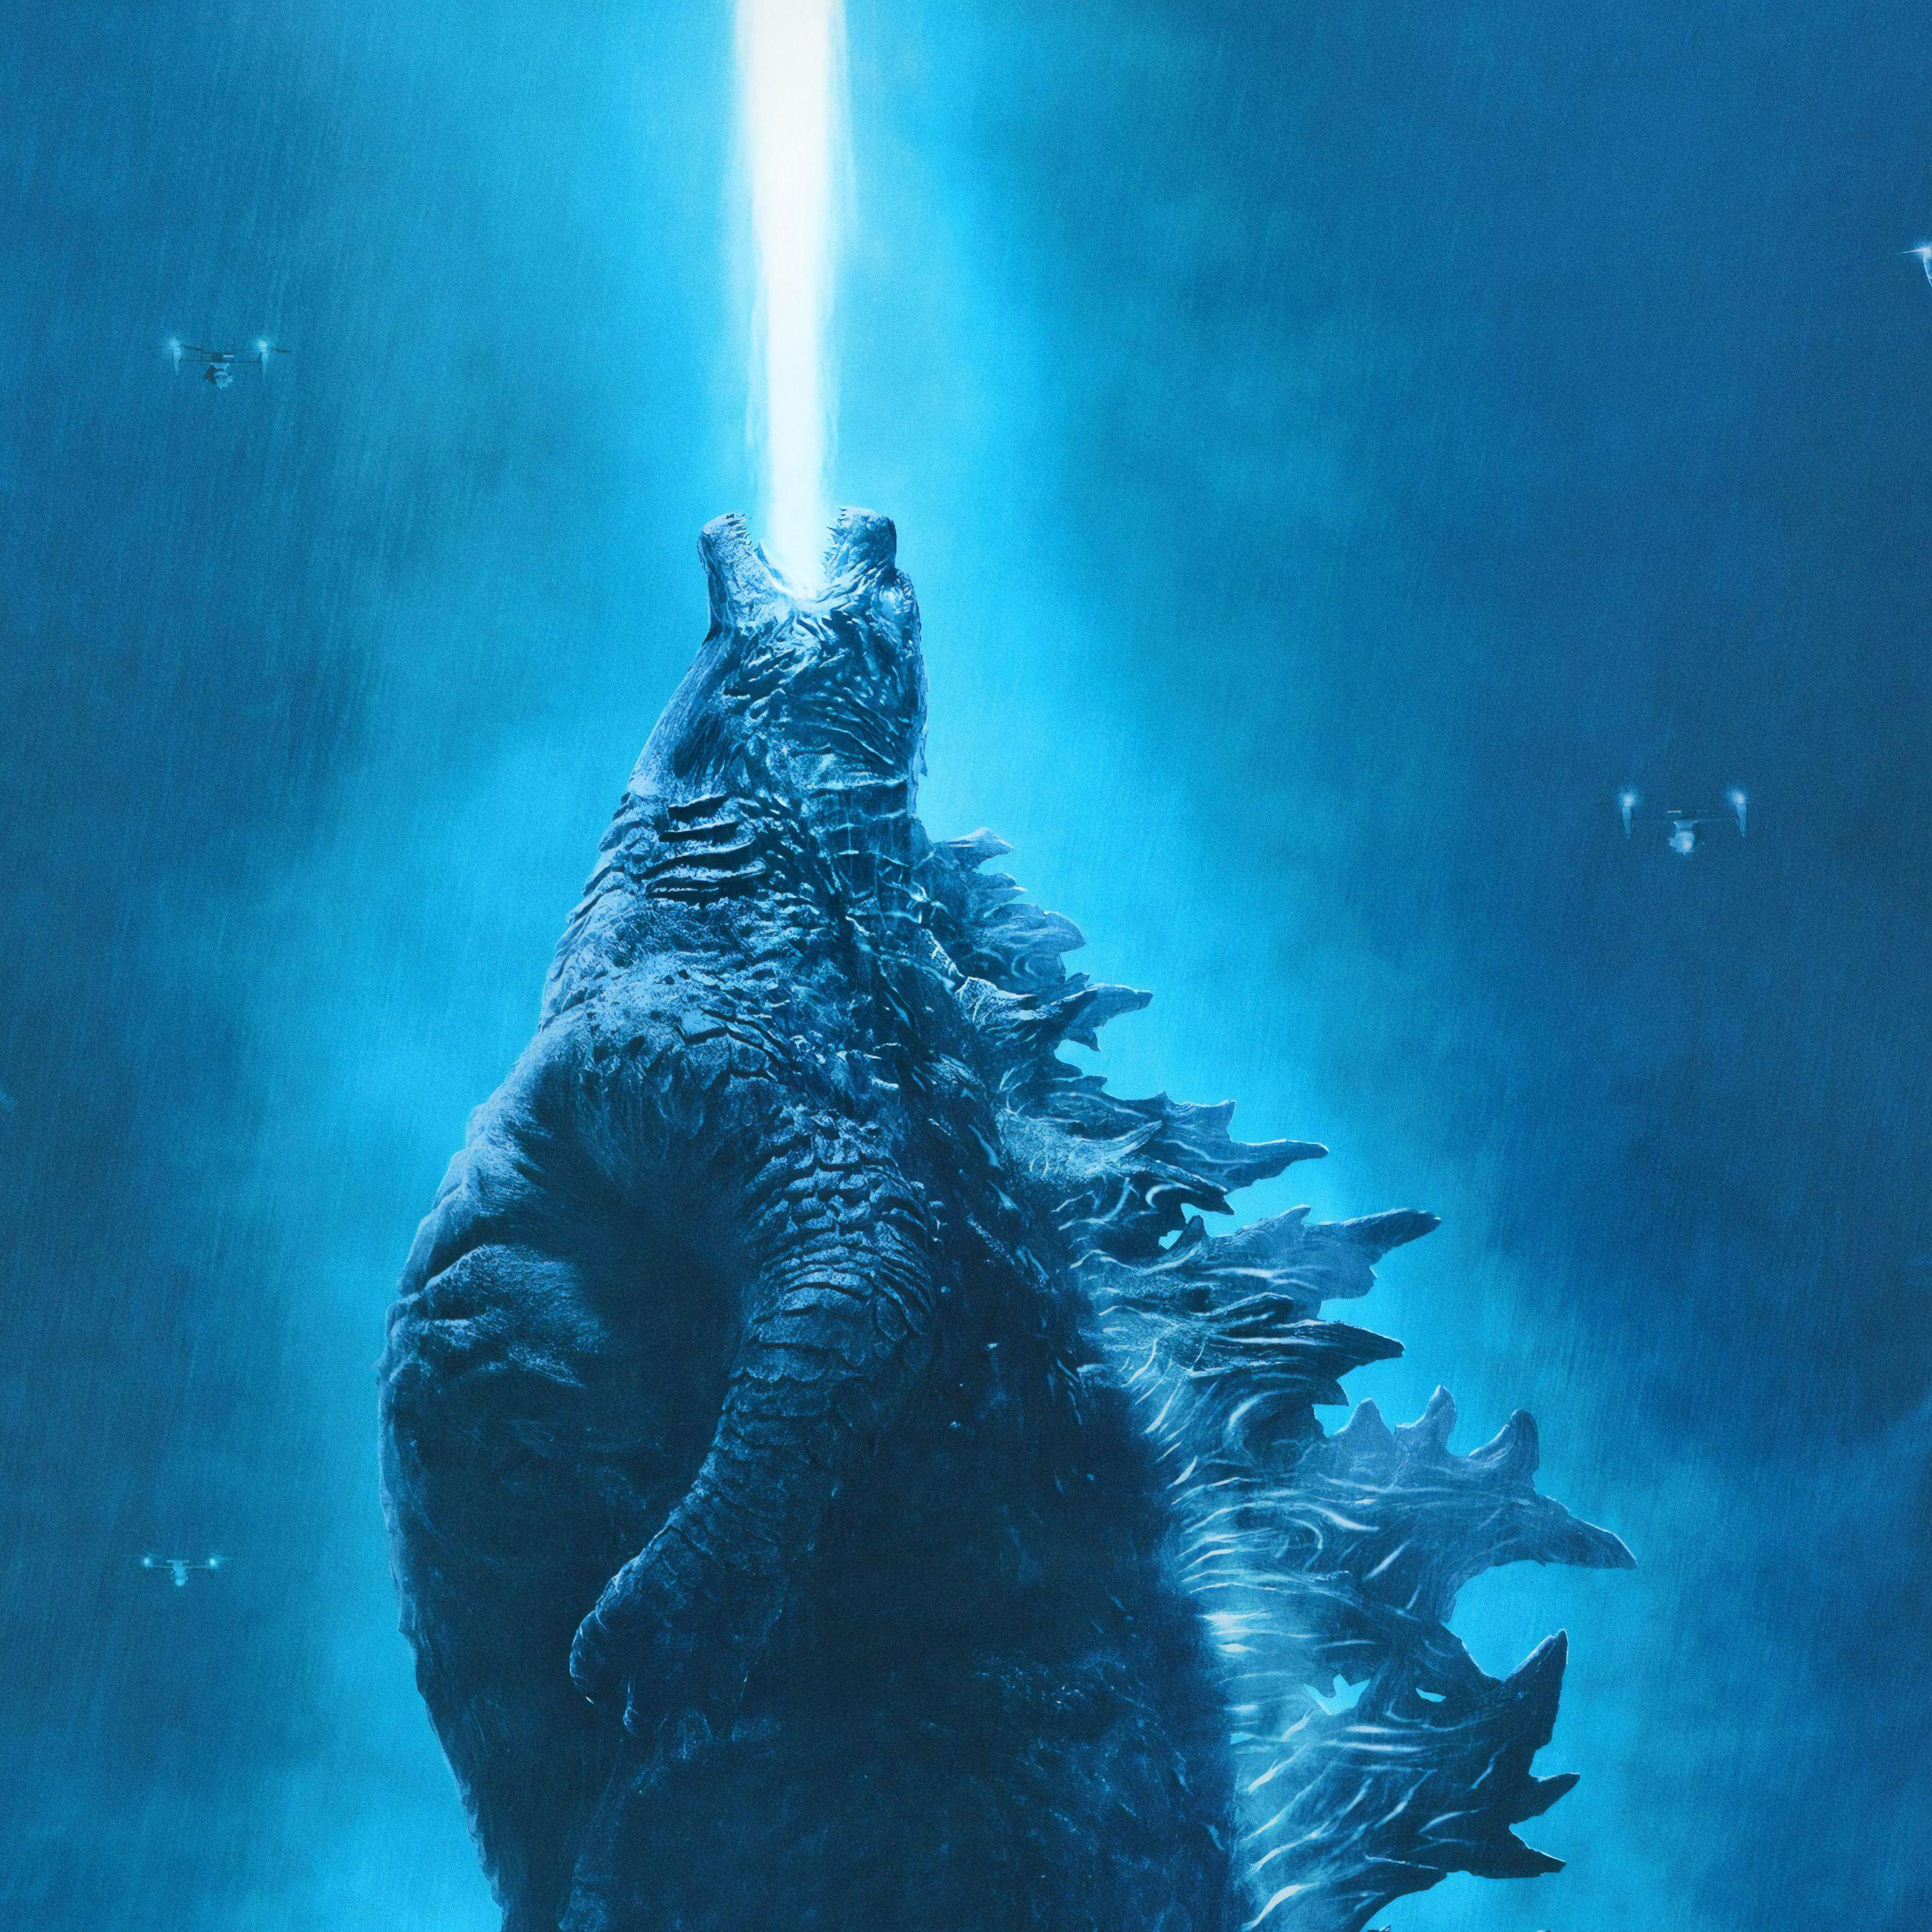 2932x2932 Godzilla King Of The Monsters 5k 2019 iPad Pro Retina